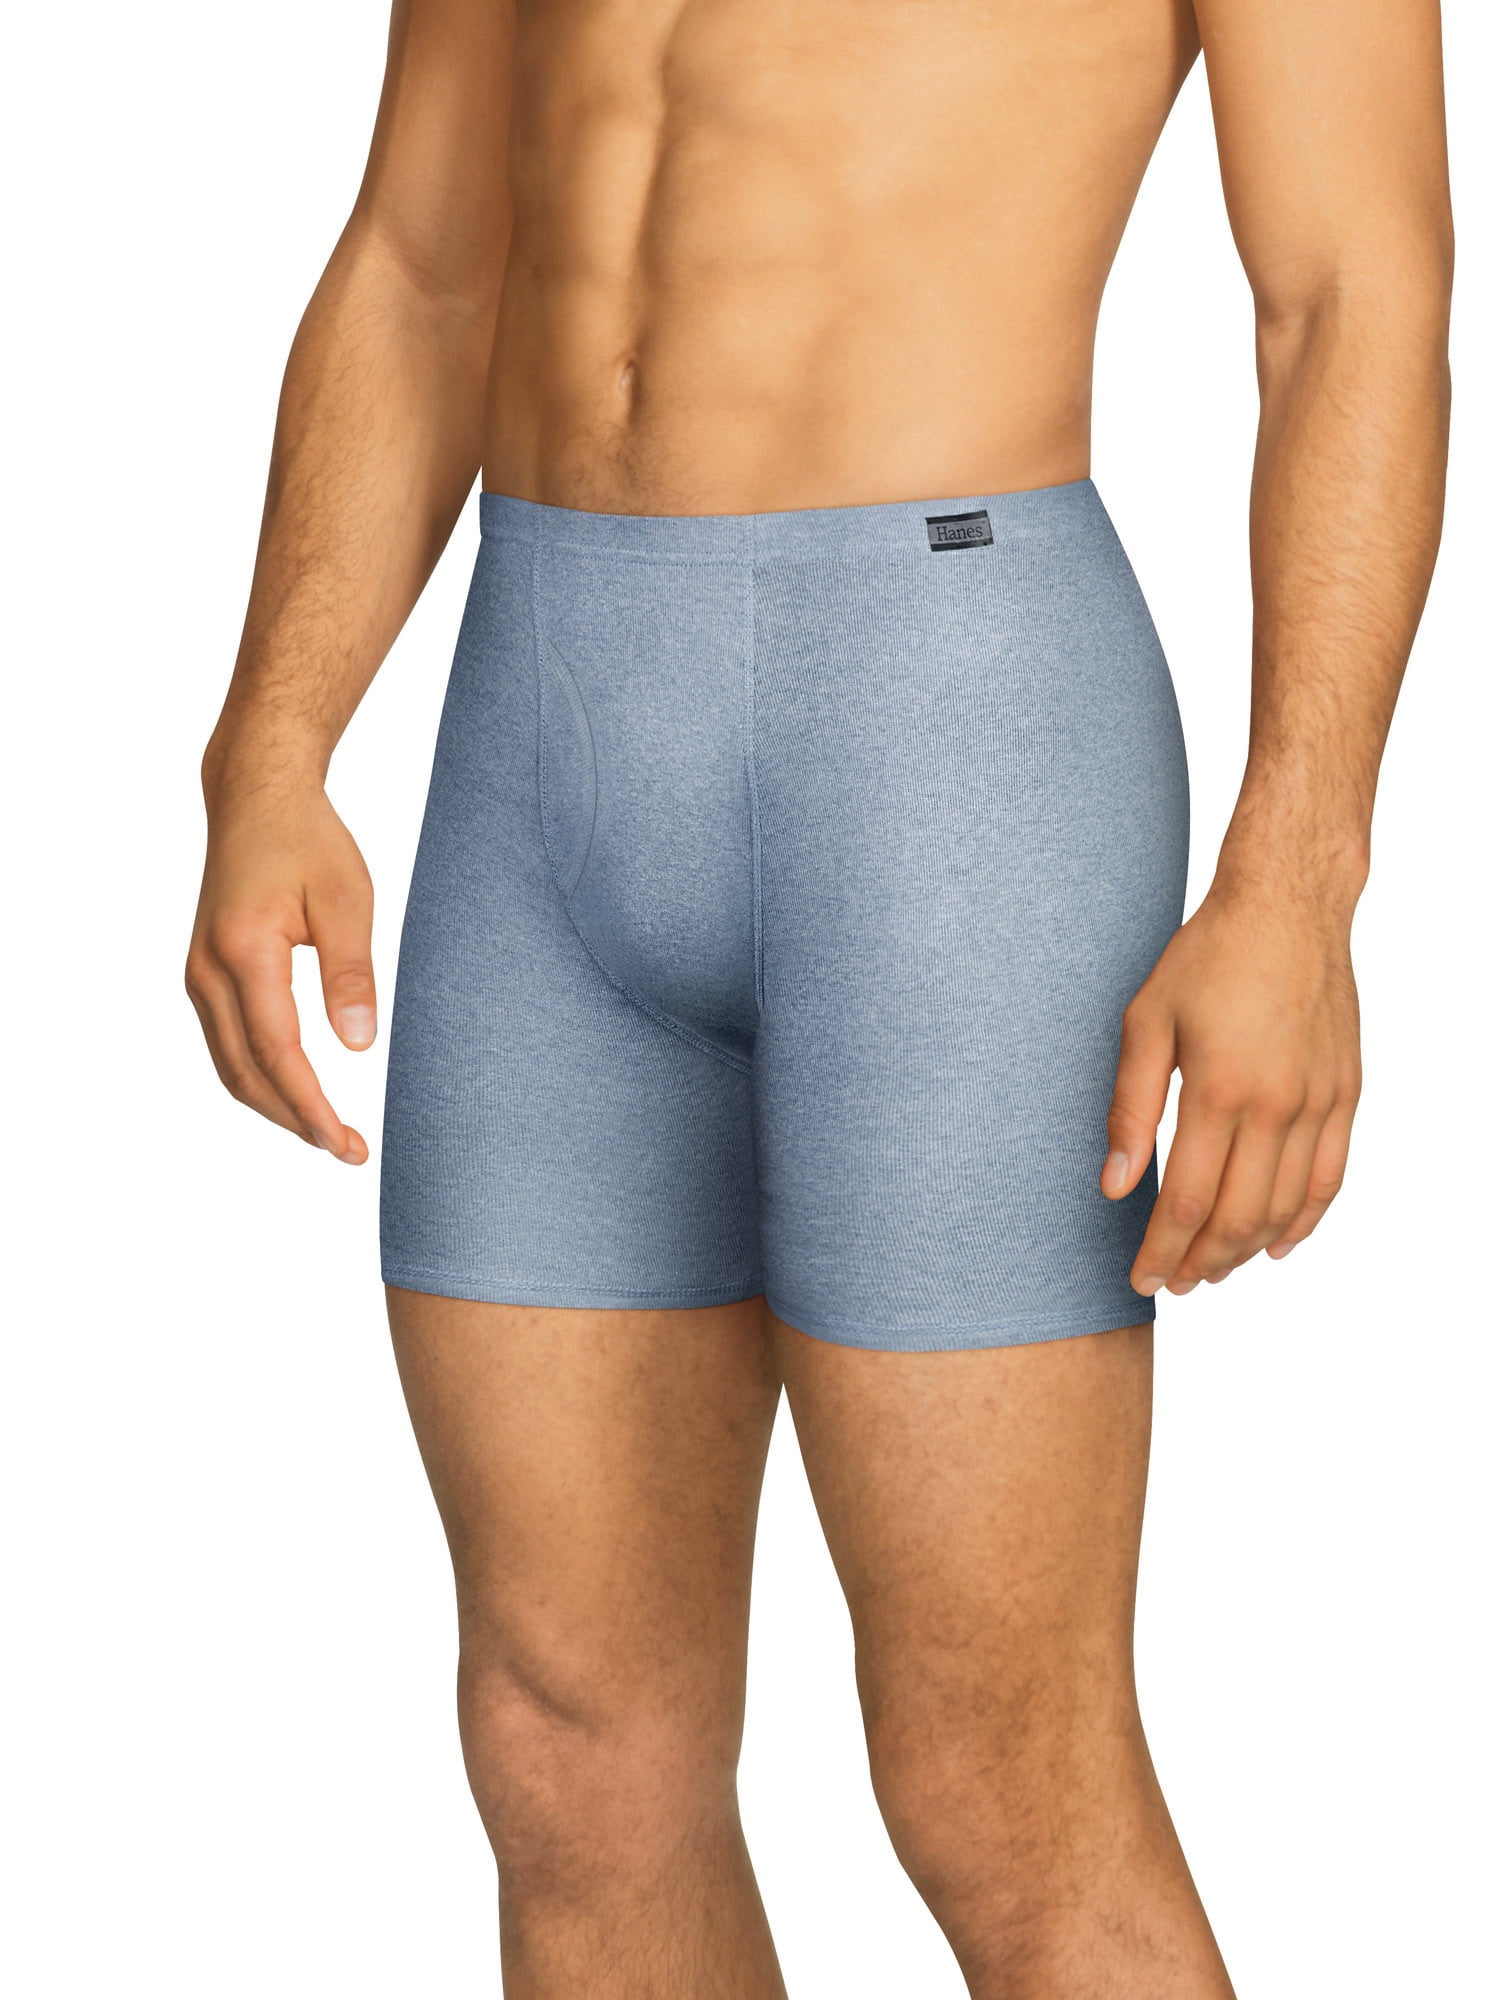 KAYIZU Mens Underwear Seamless Comfort Soft Stretch Boxer Brief 6-Pack